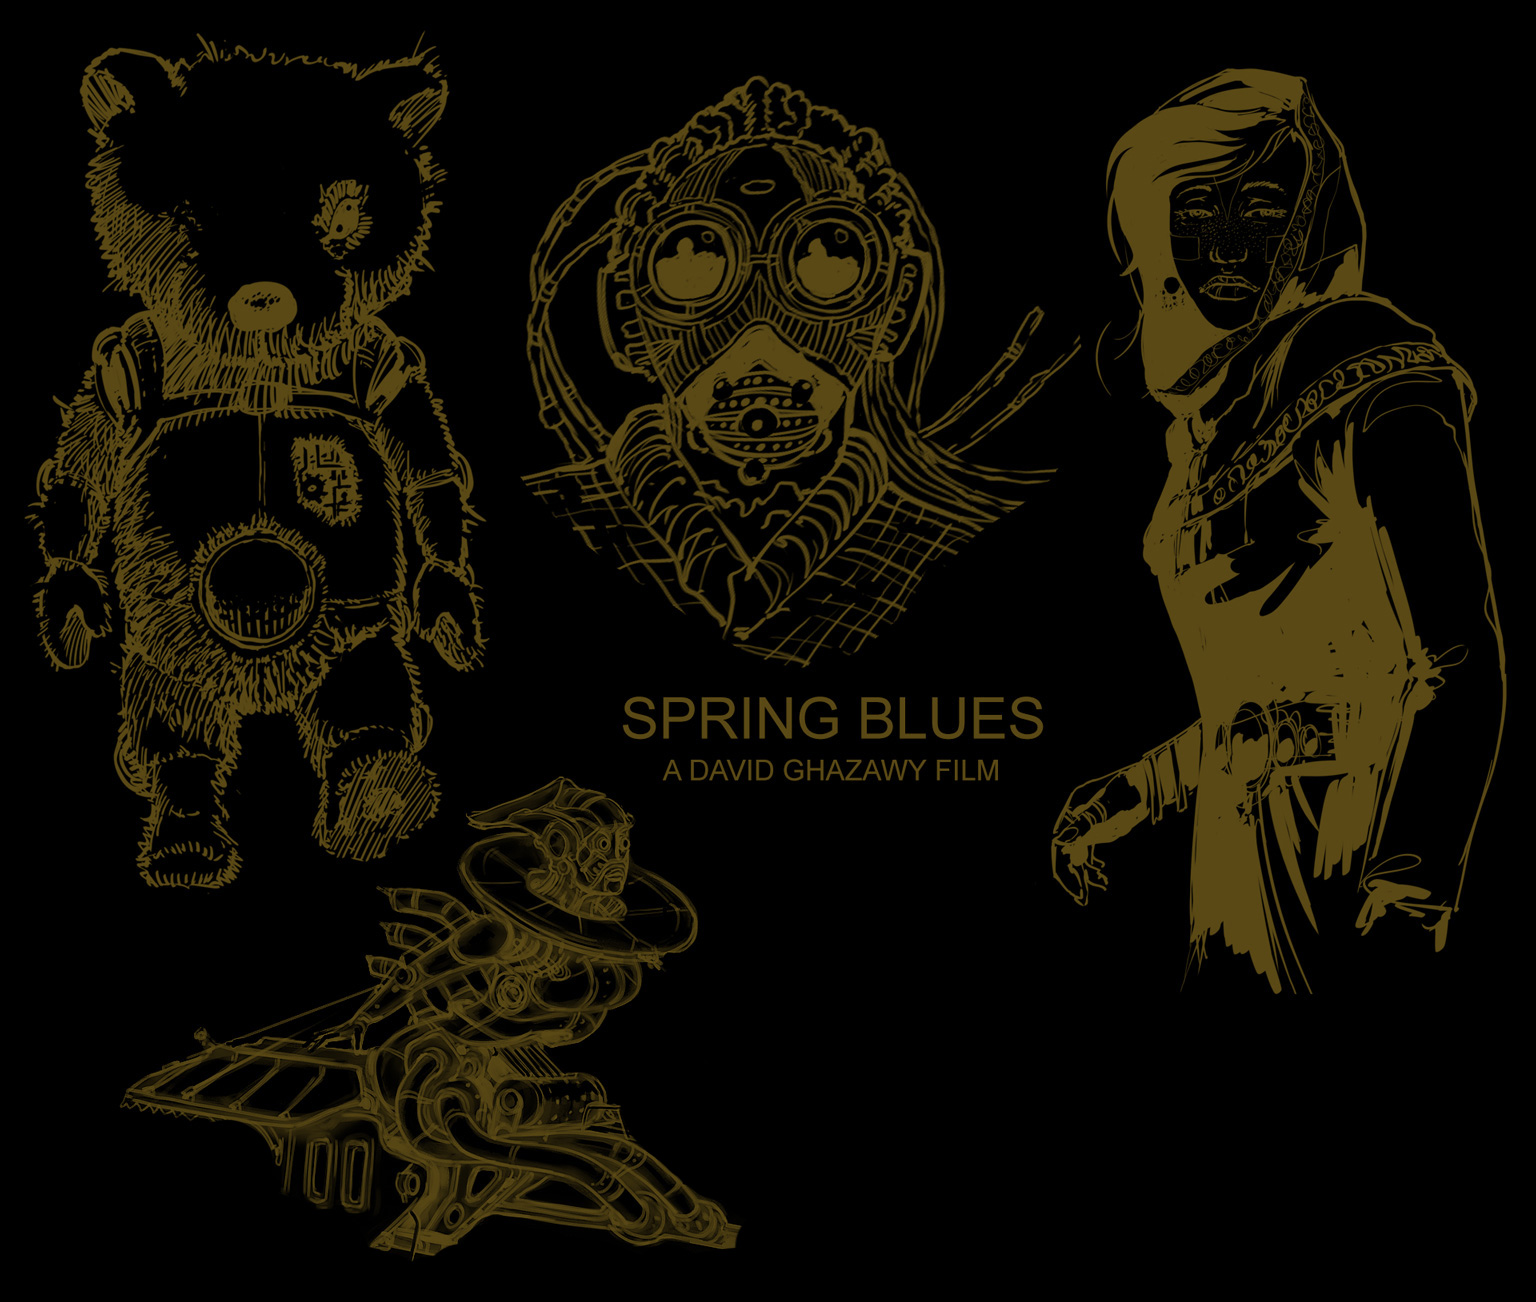 Spring Blues - A David Ghazawy Film